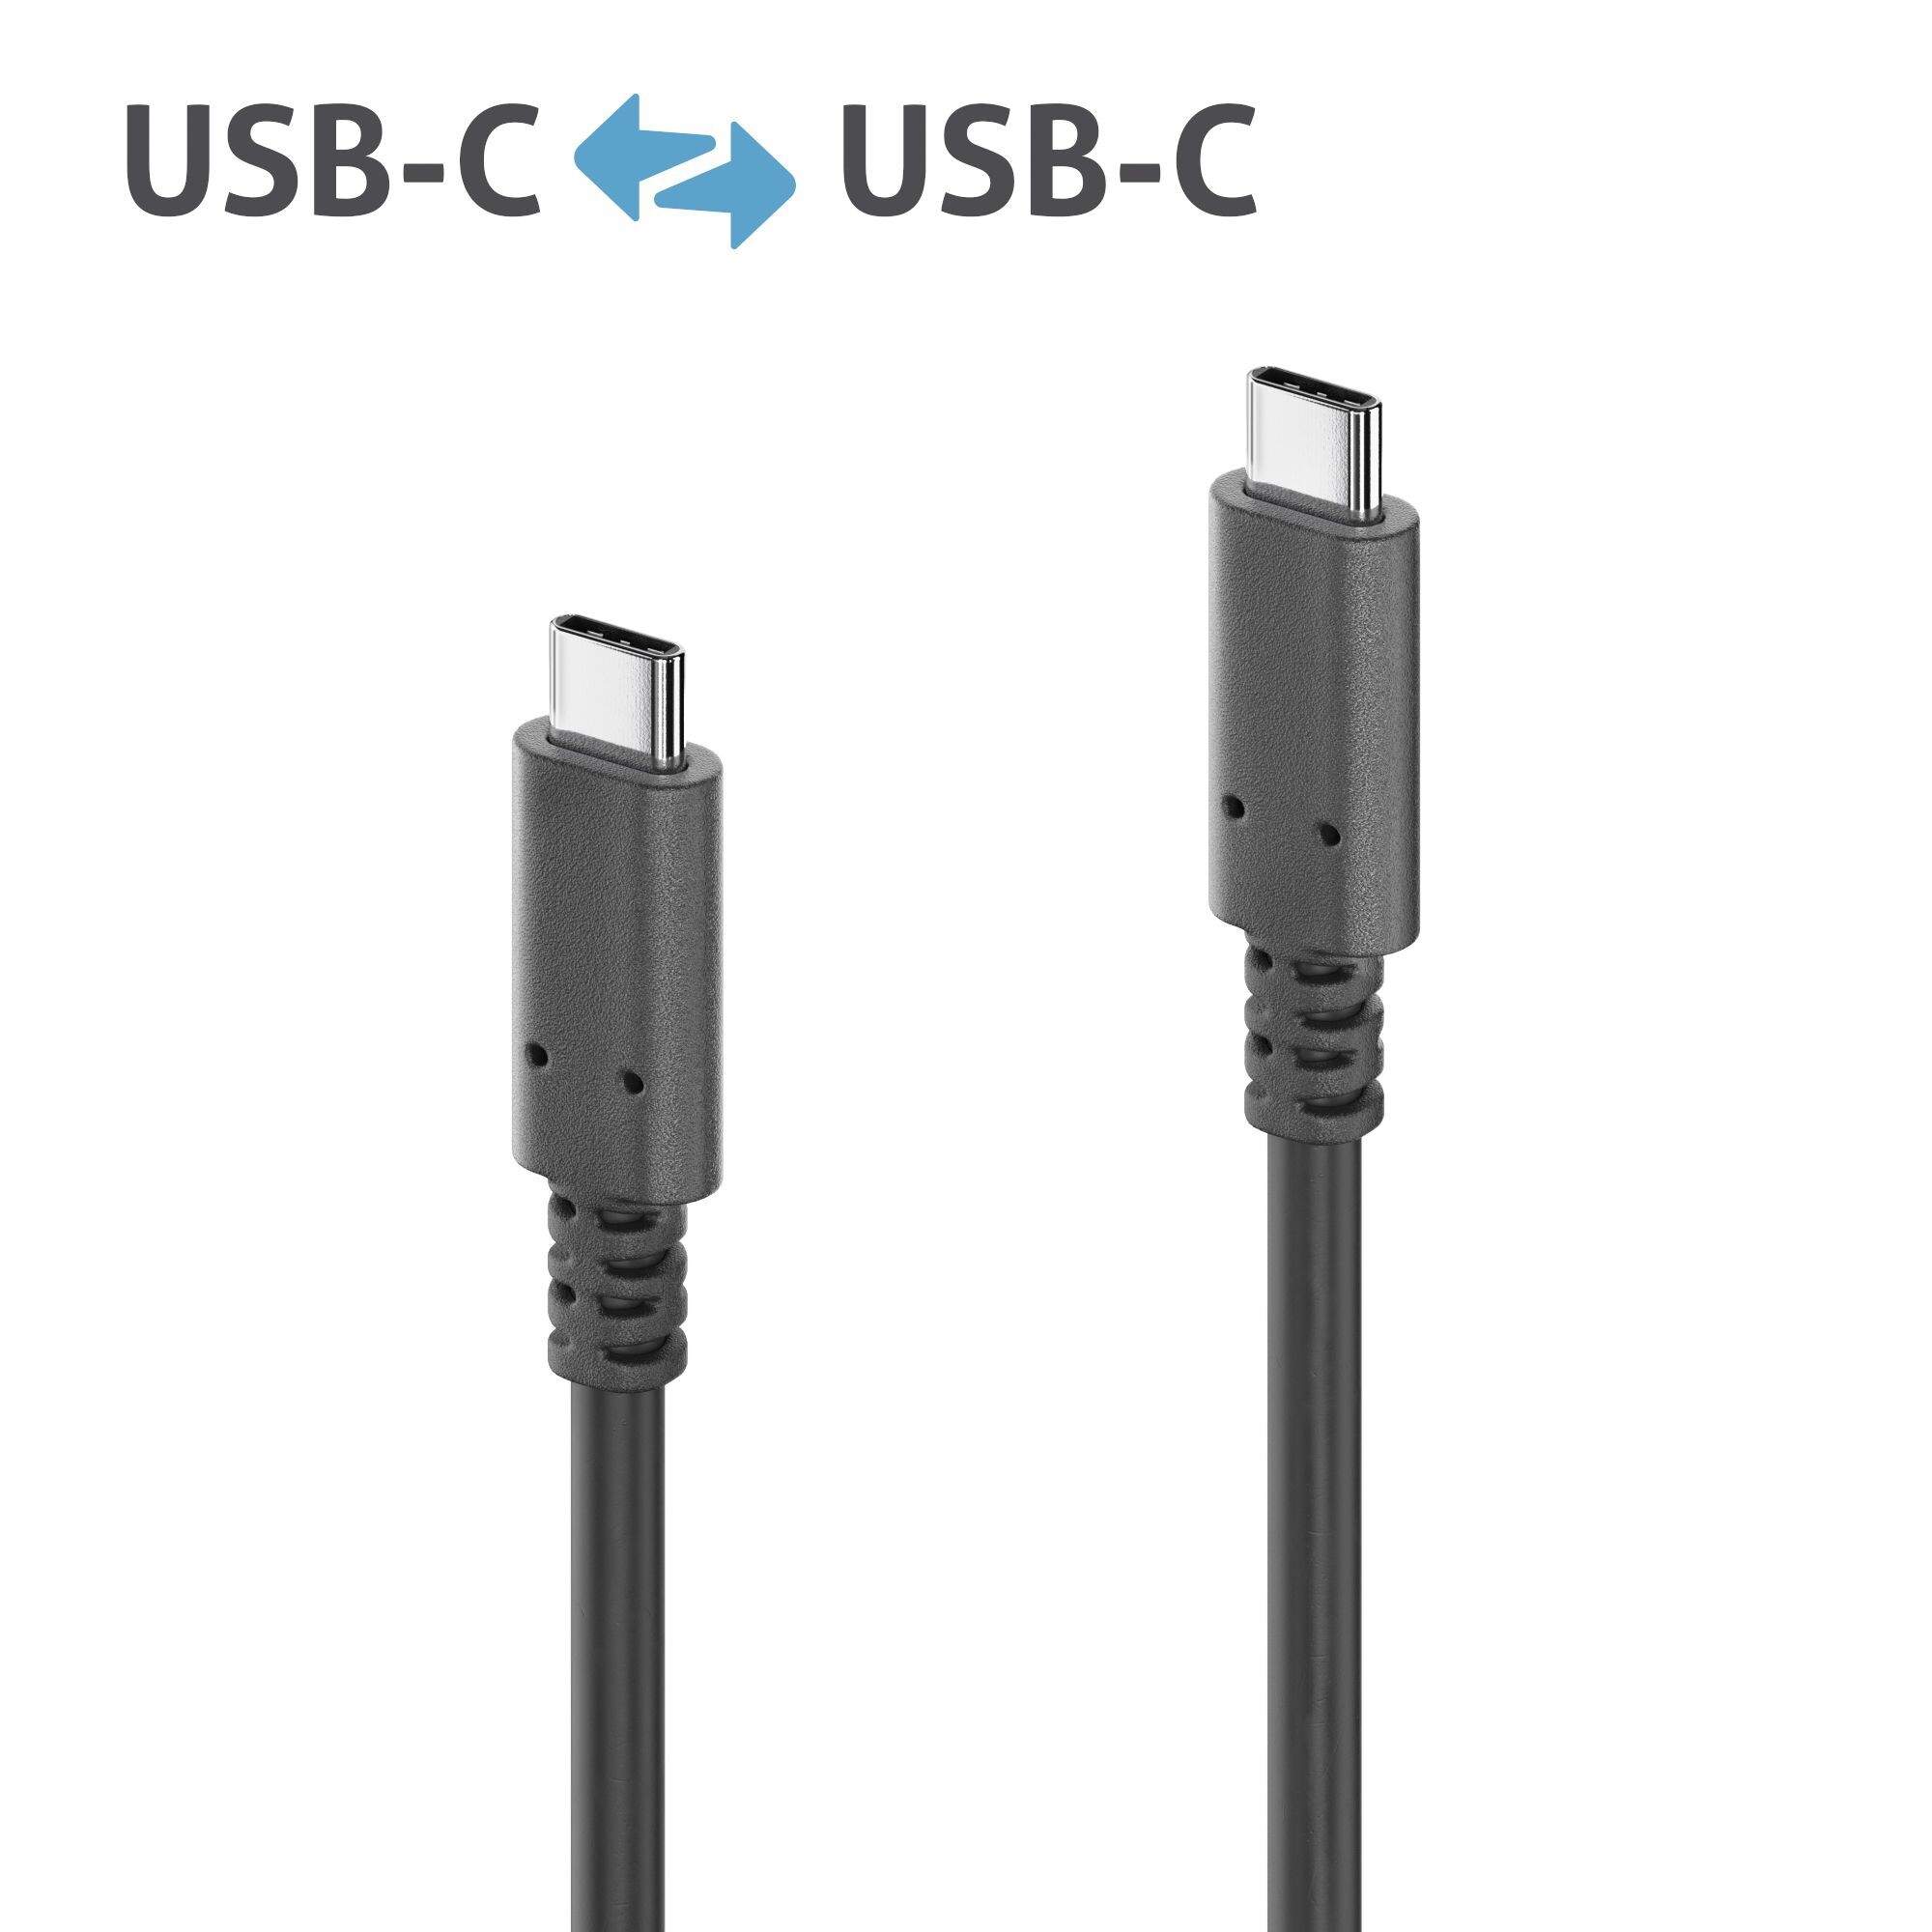 PURELINK Active USB v3.2 Gen 2x1 USB-C Cable with E-Marker 3.00m - Kabel - Digital/Daten (PI6000-030